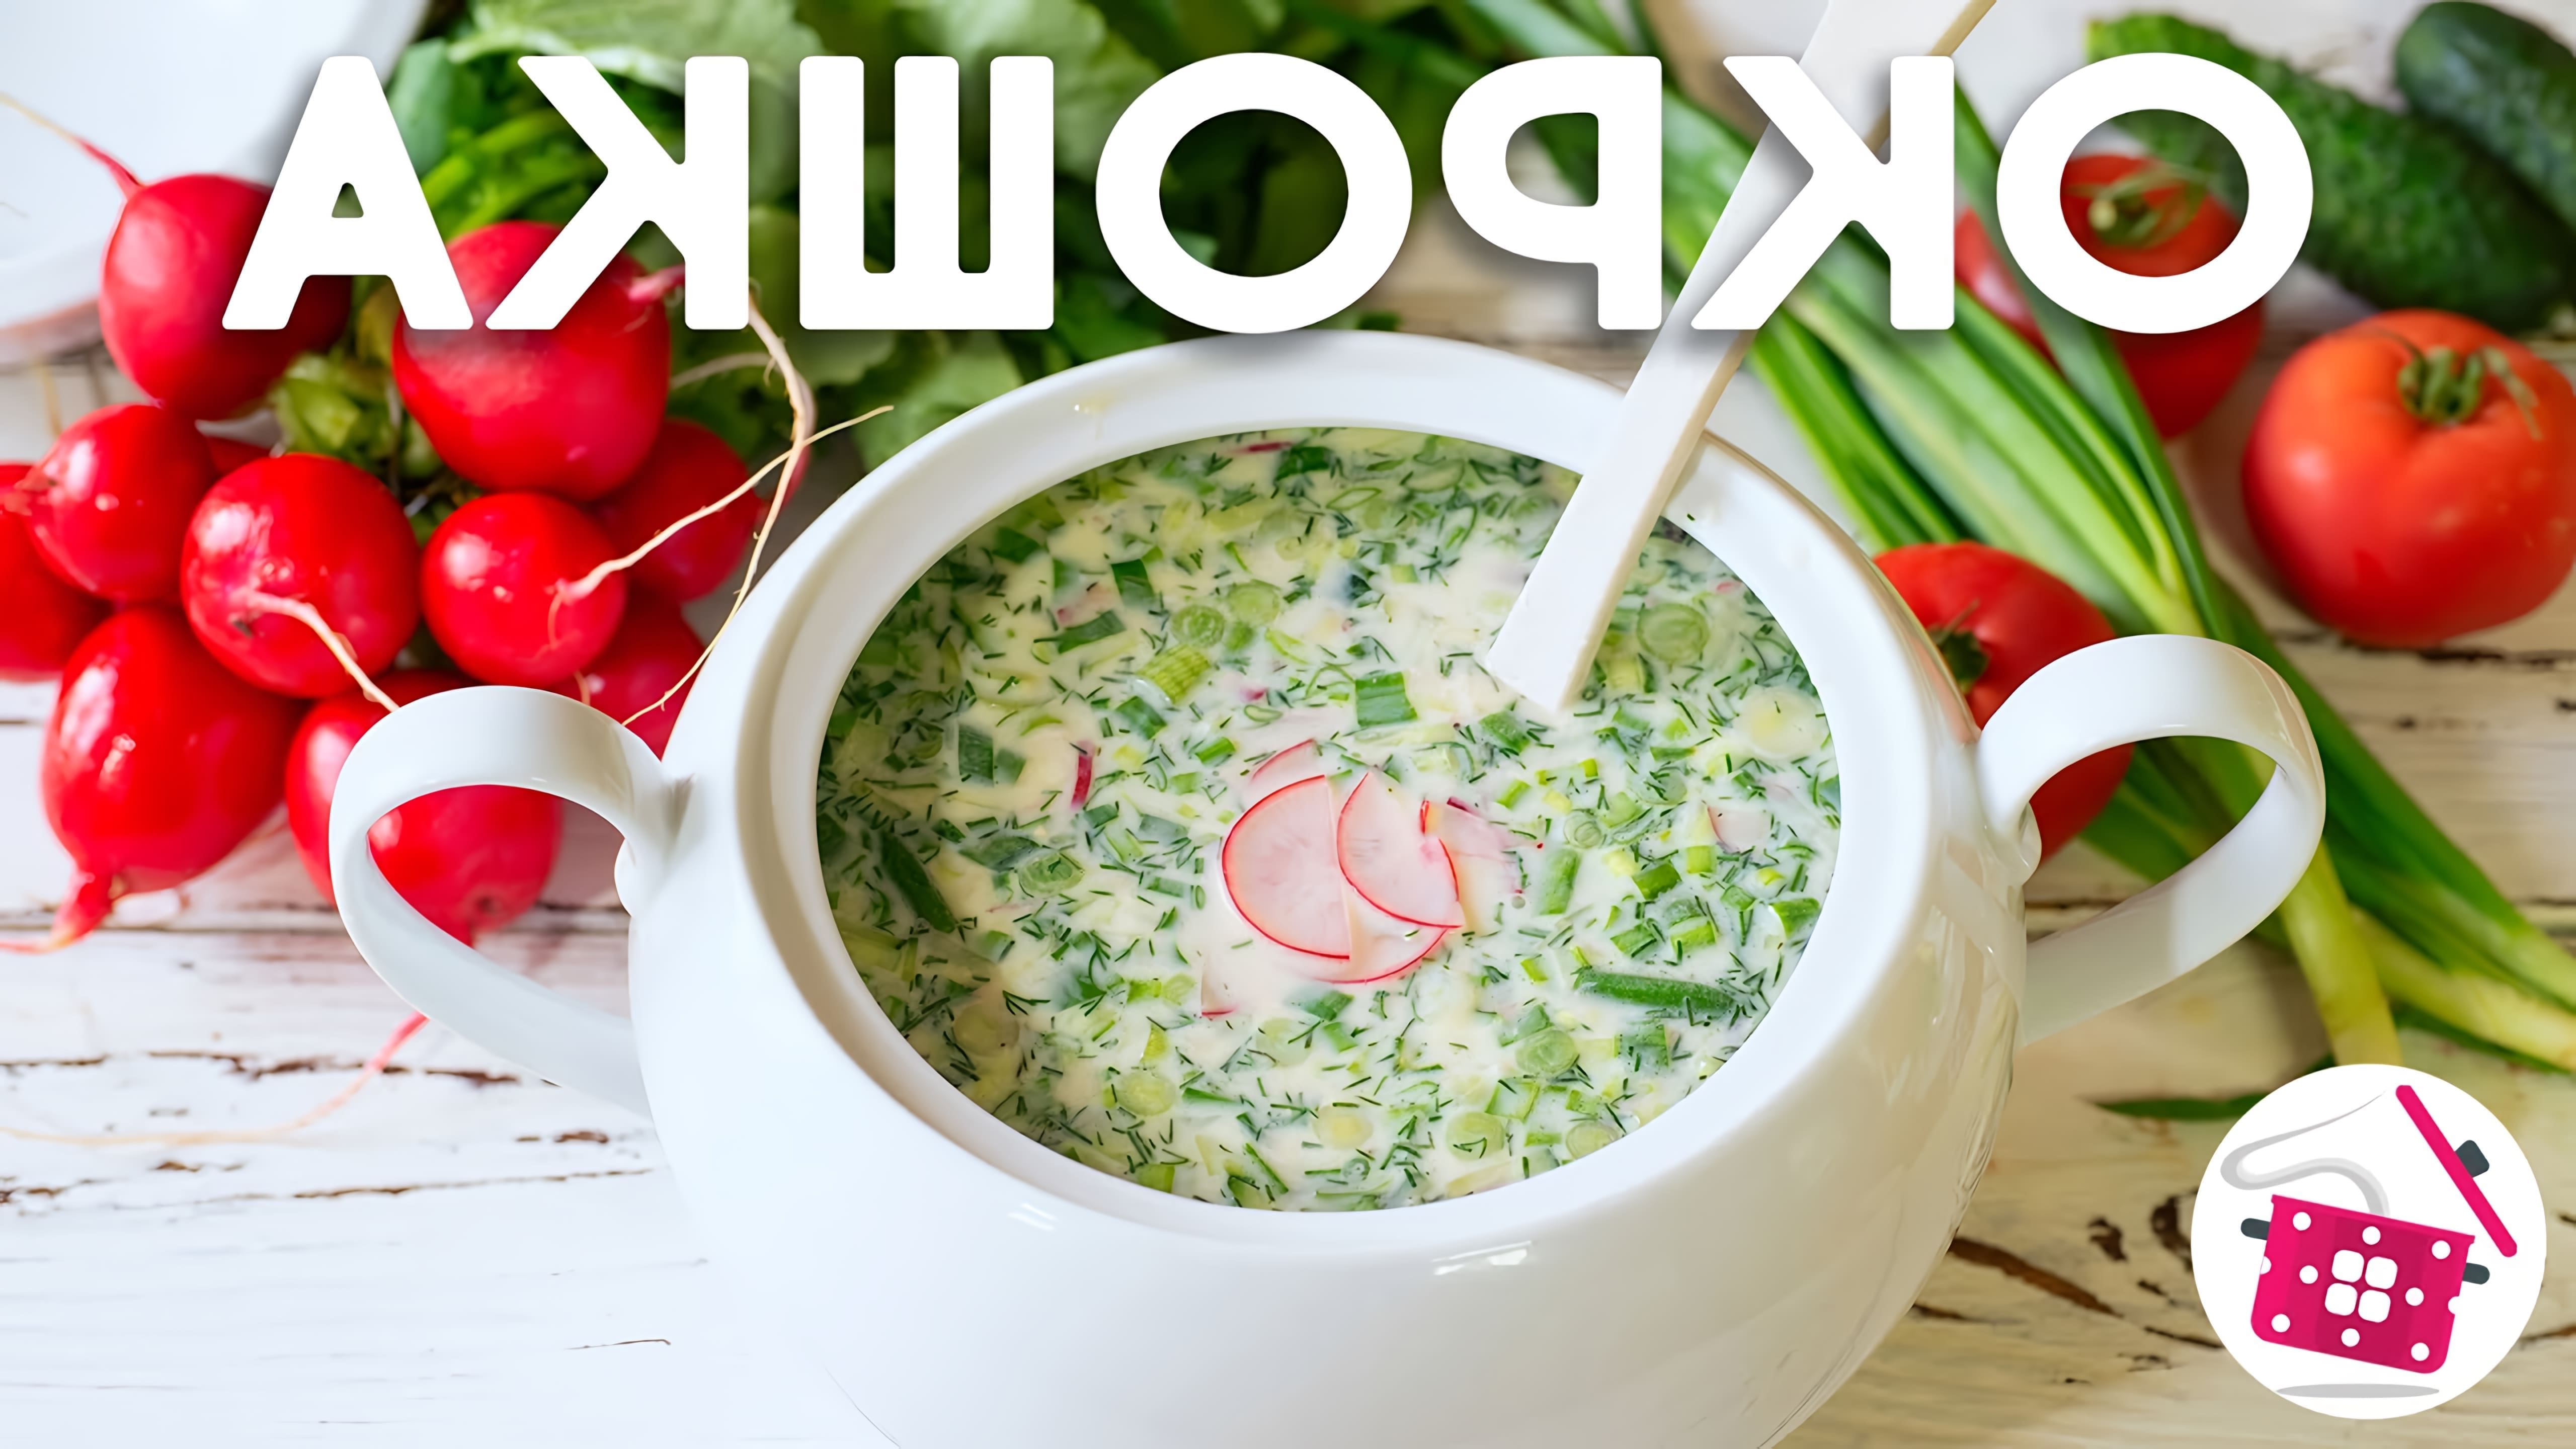 В этом видео демонстрируется процесс приготовления окрошки - традиционного русского блюда